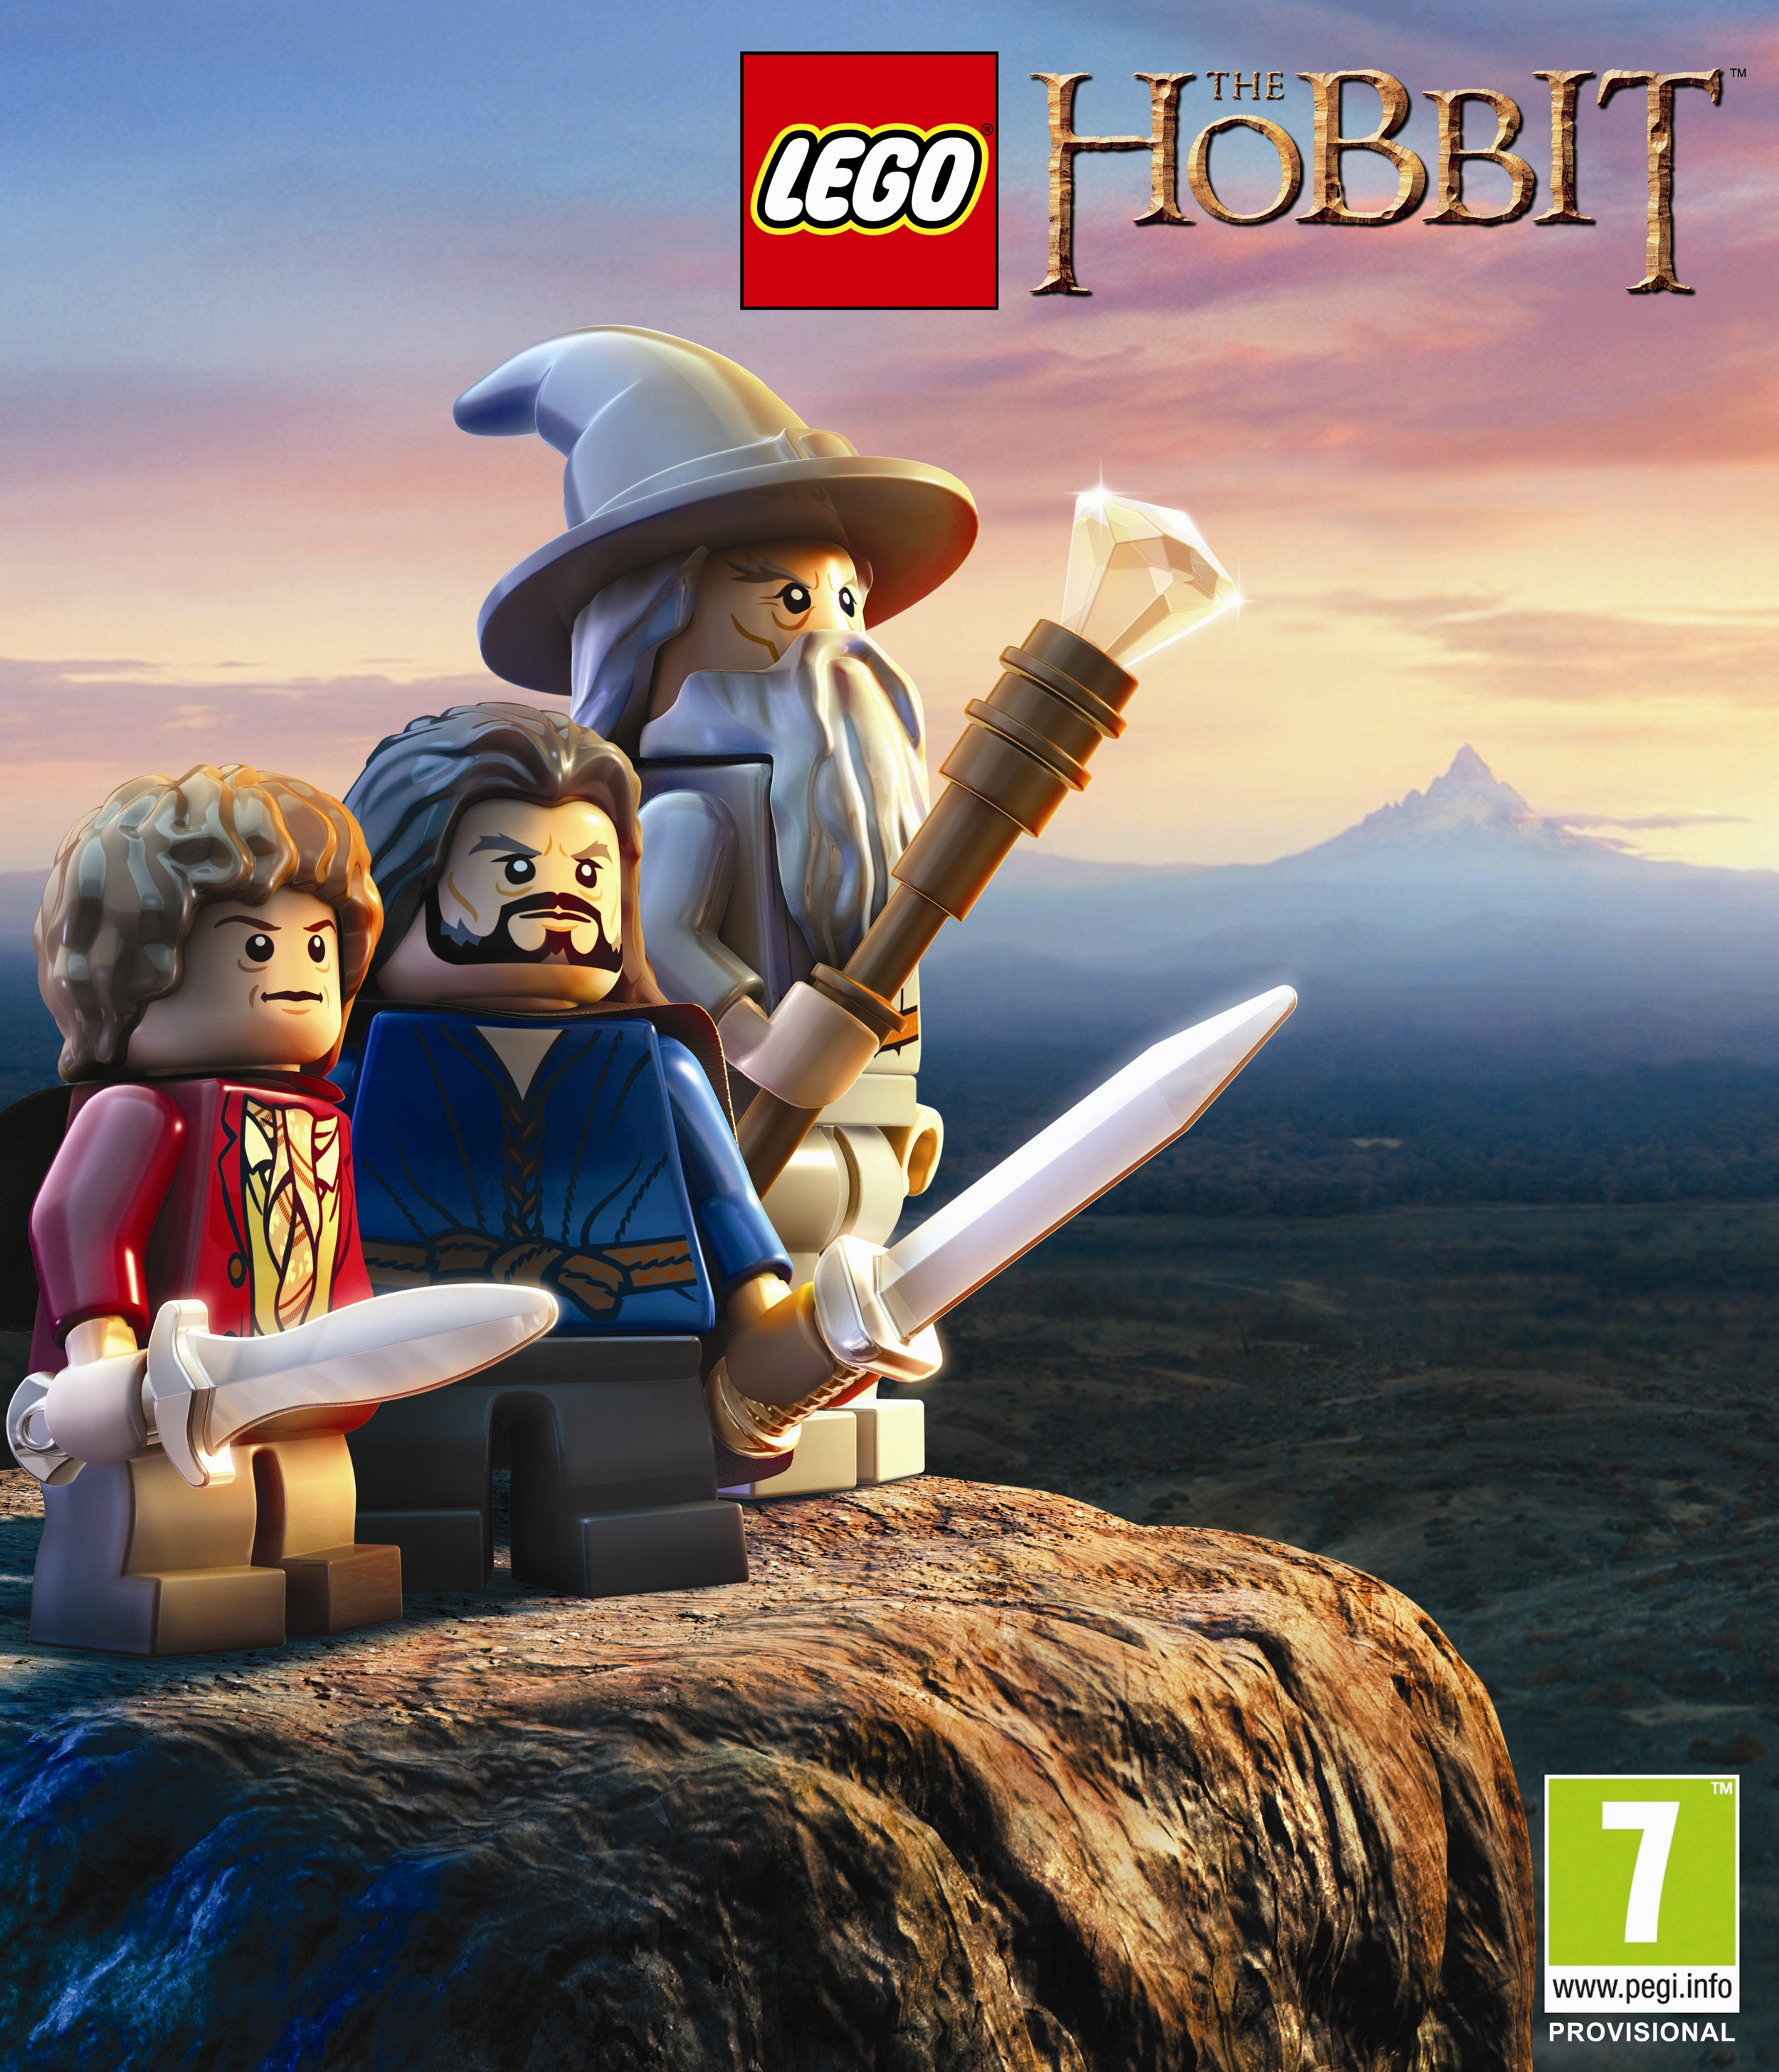 LEGO The Hobbit 25112013